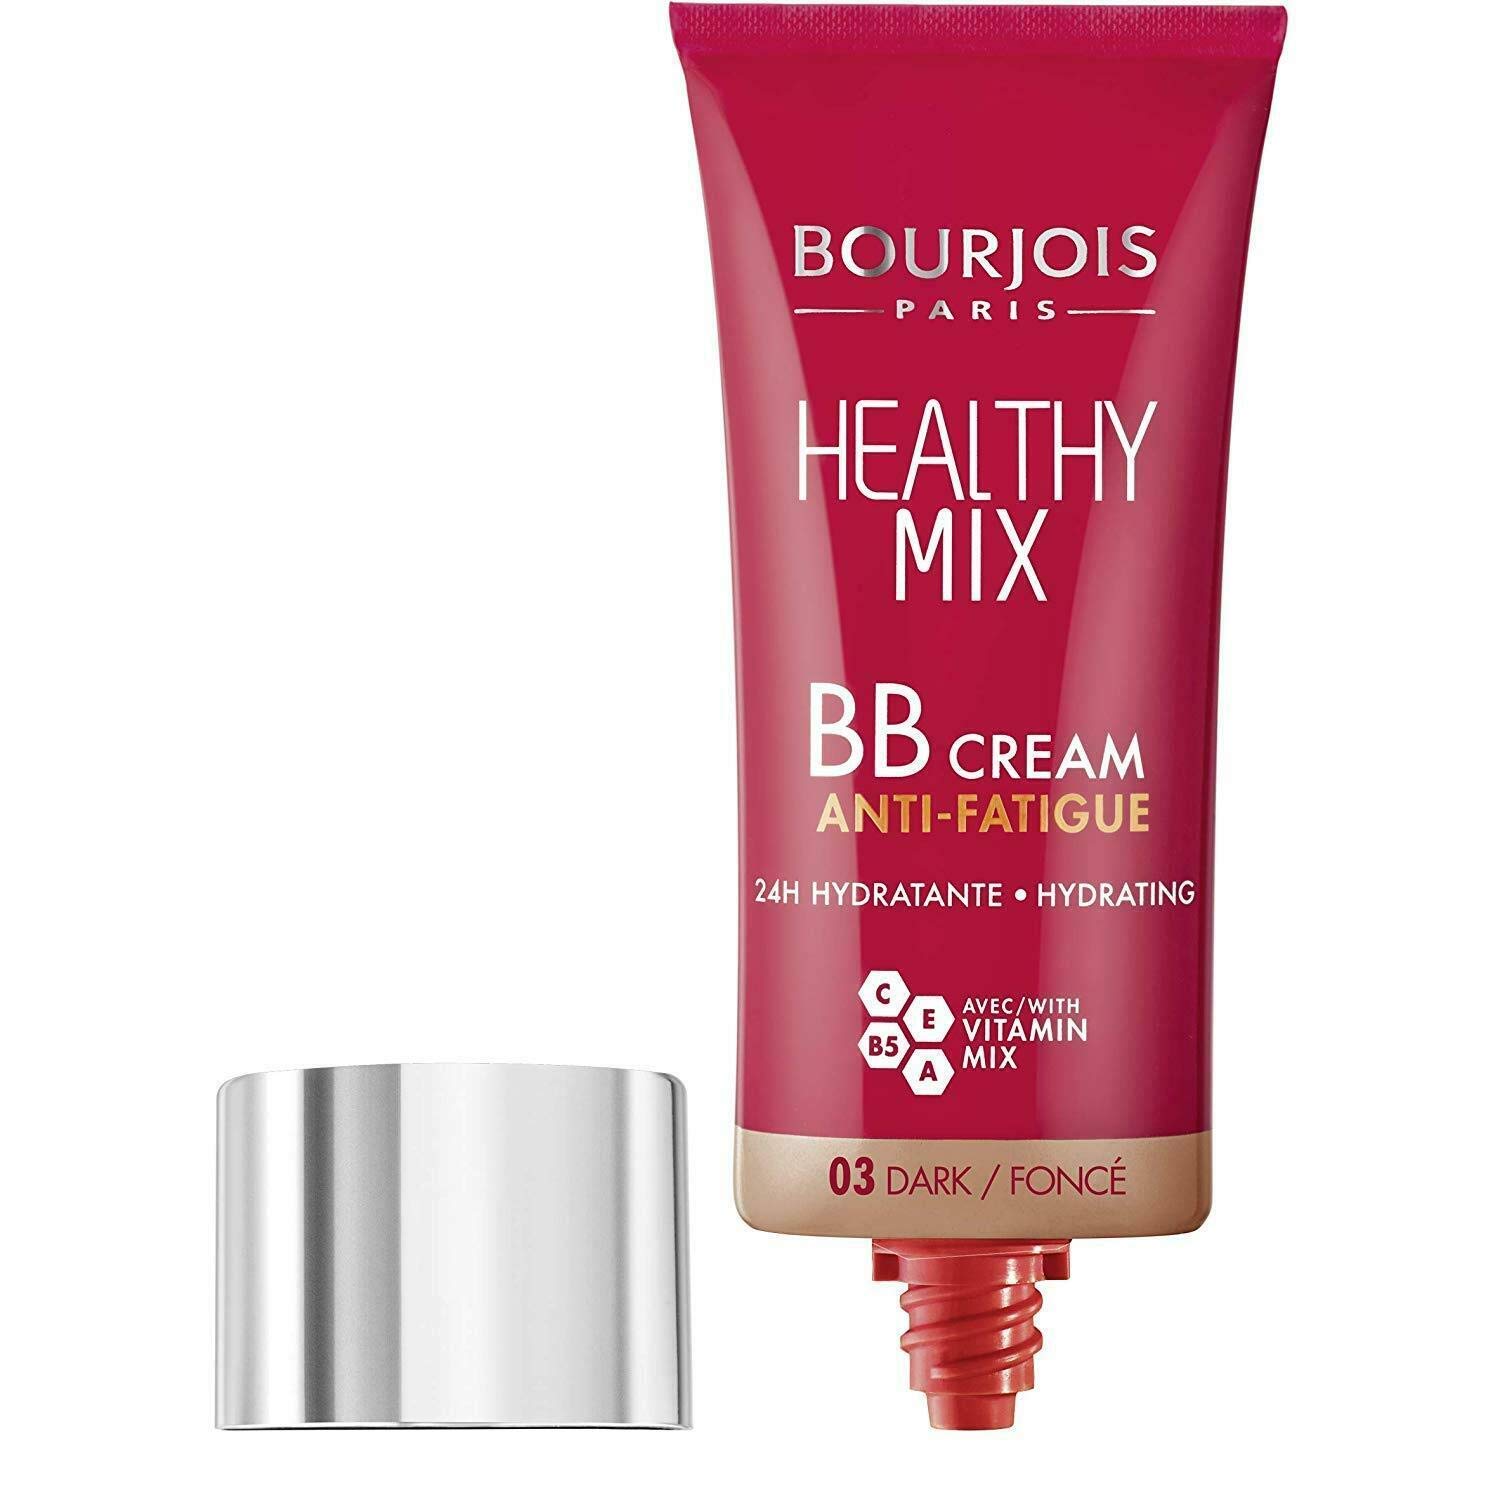  3 x Bourjois Healthy Mix BB Cream Anti-Fatigue Foundation (03 Dark), ‎03 dark